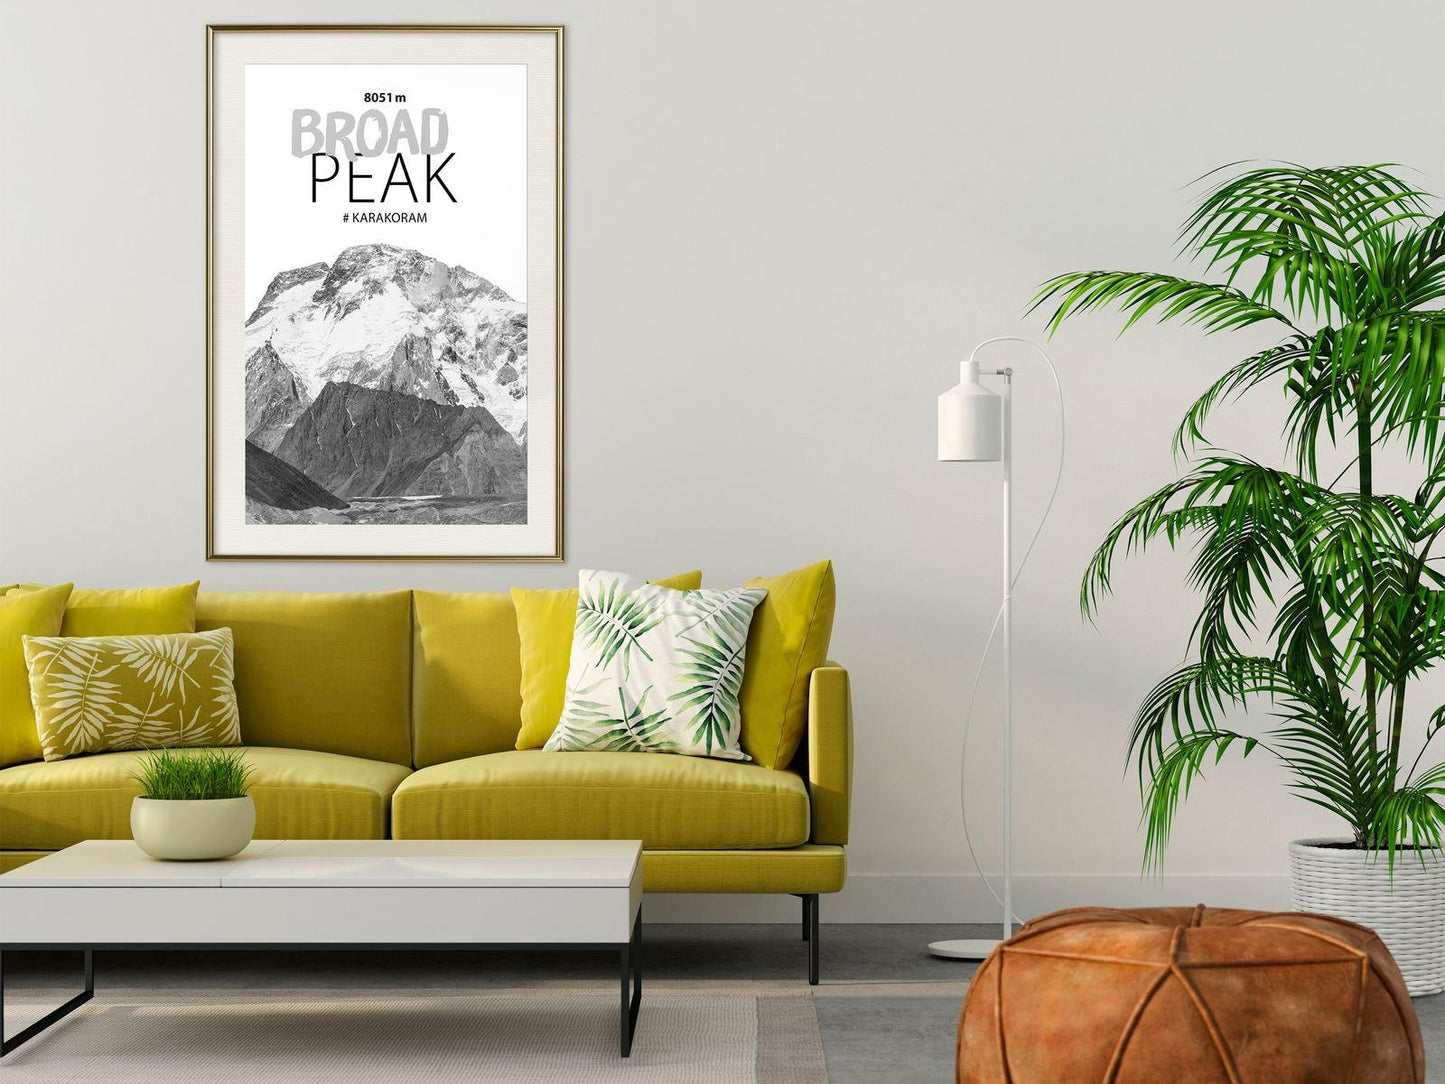 Peaks of the World: Broad Peak